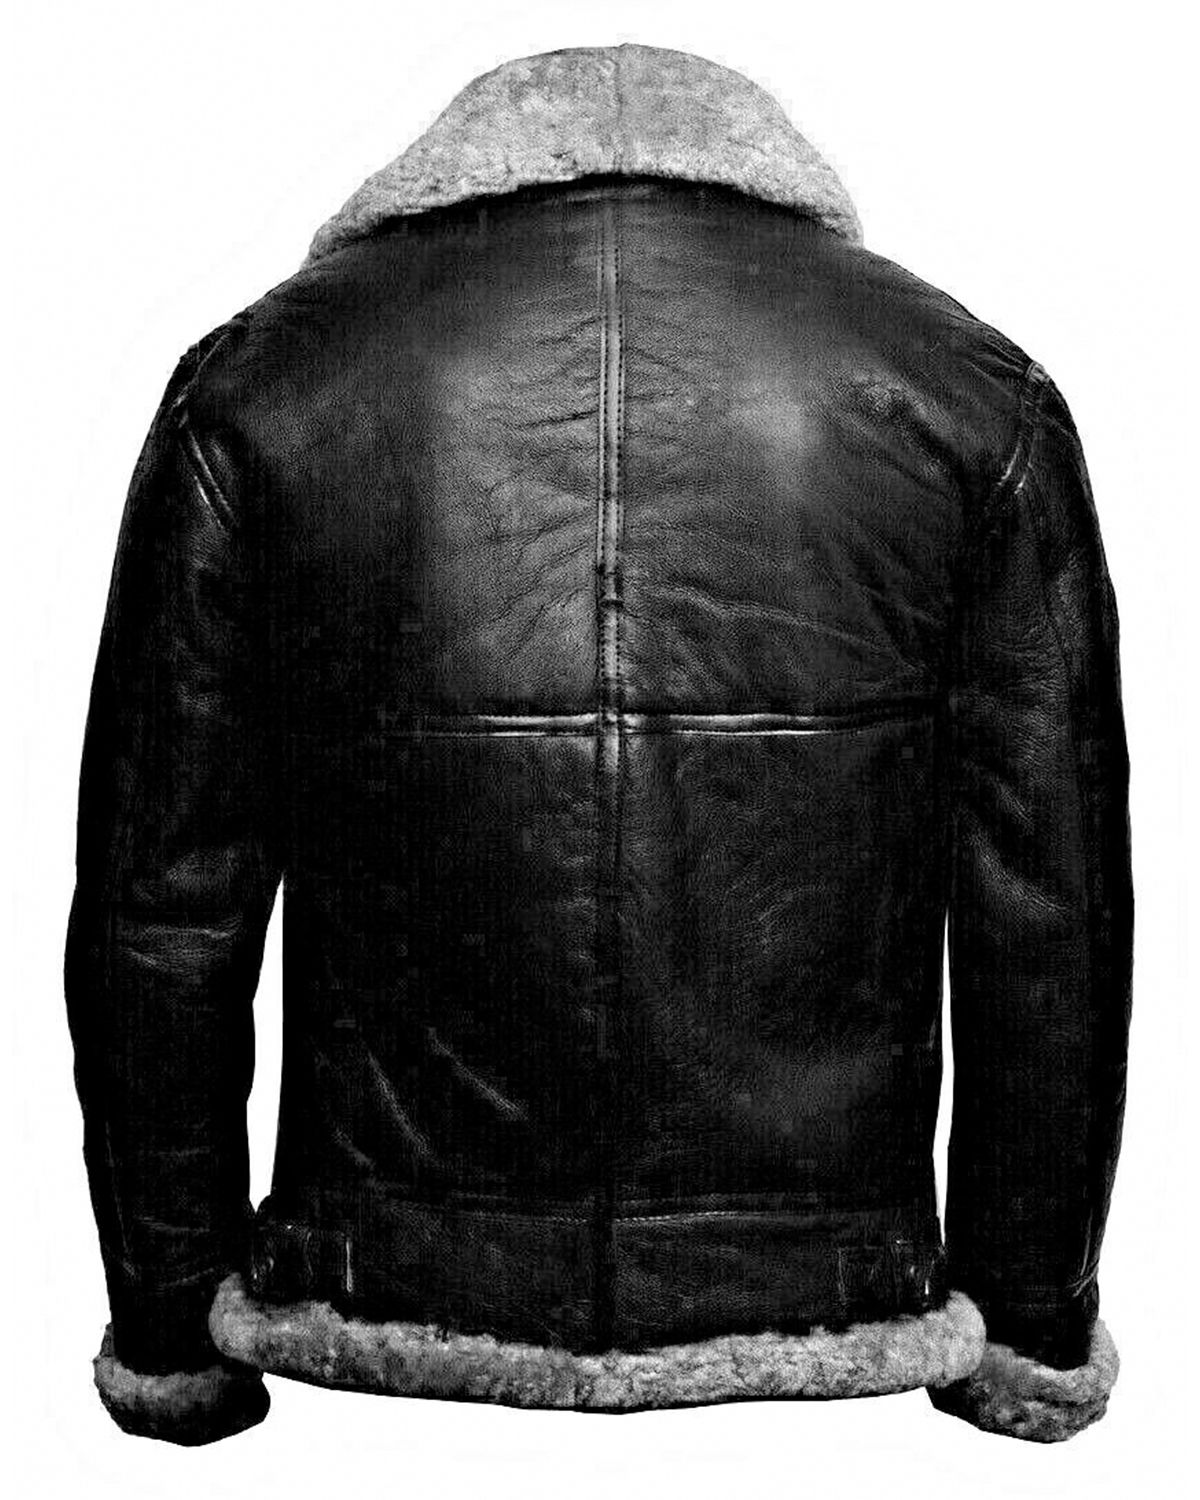 Black Leather Fur Jacket For Man | Elite Jacket